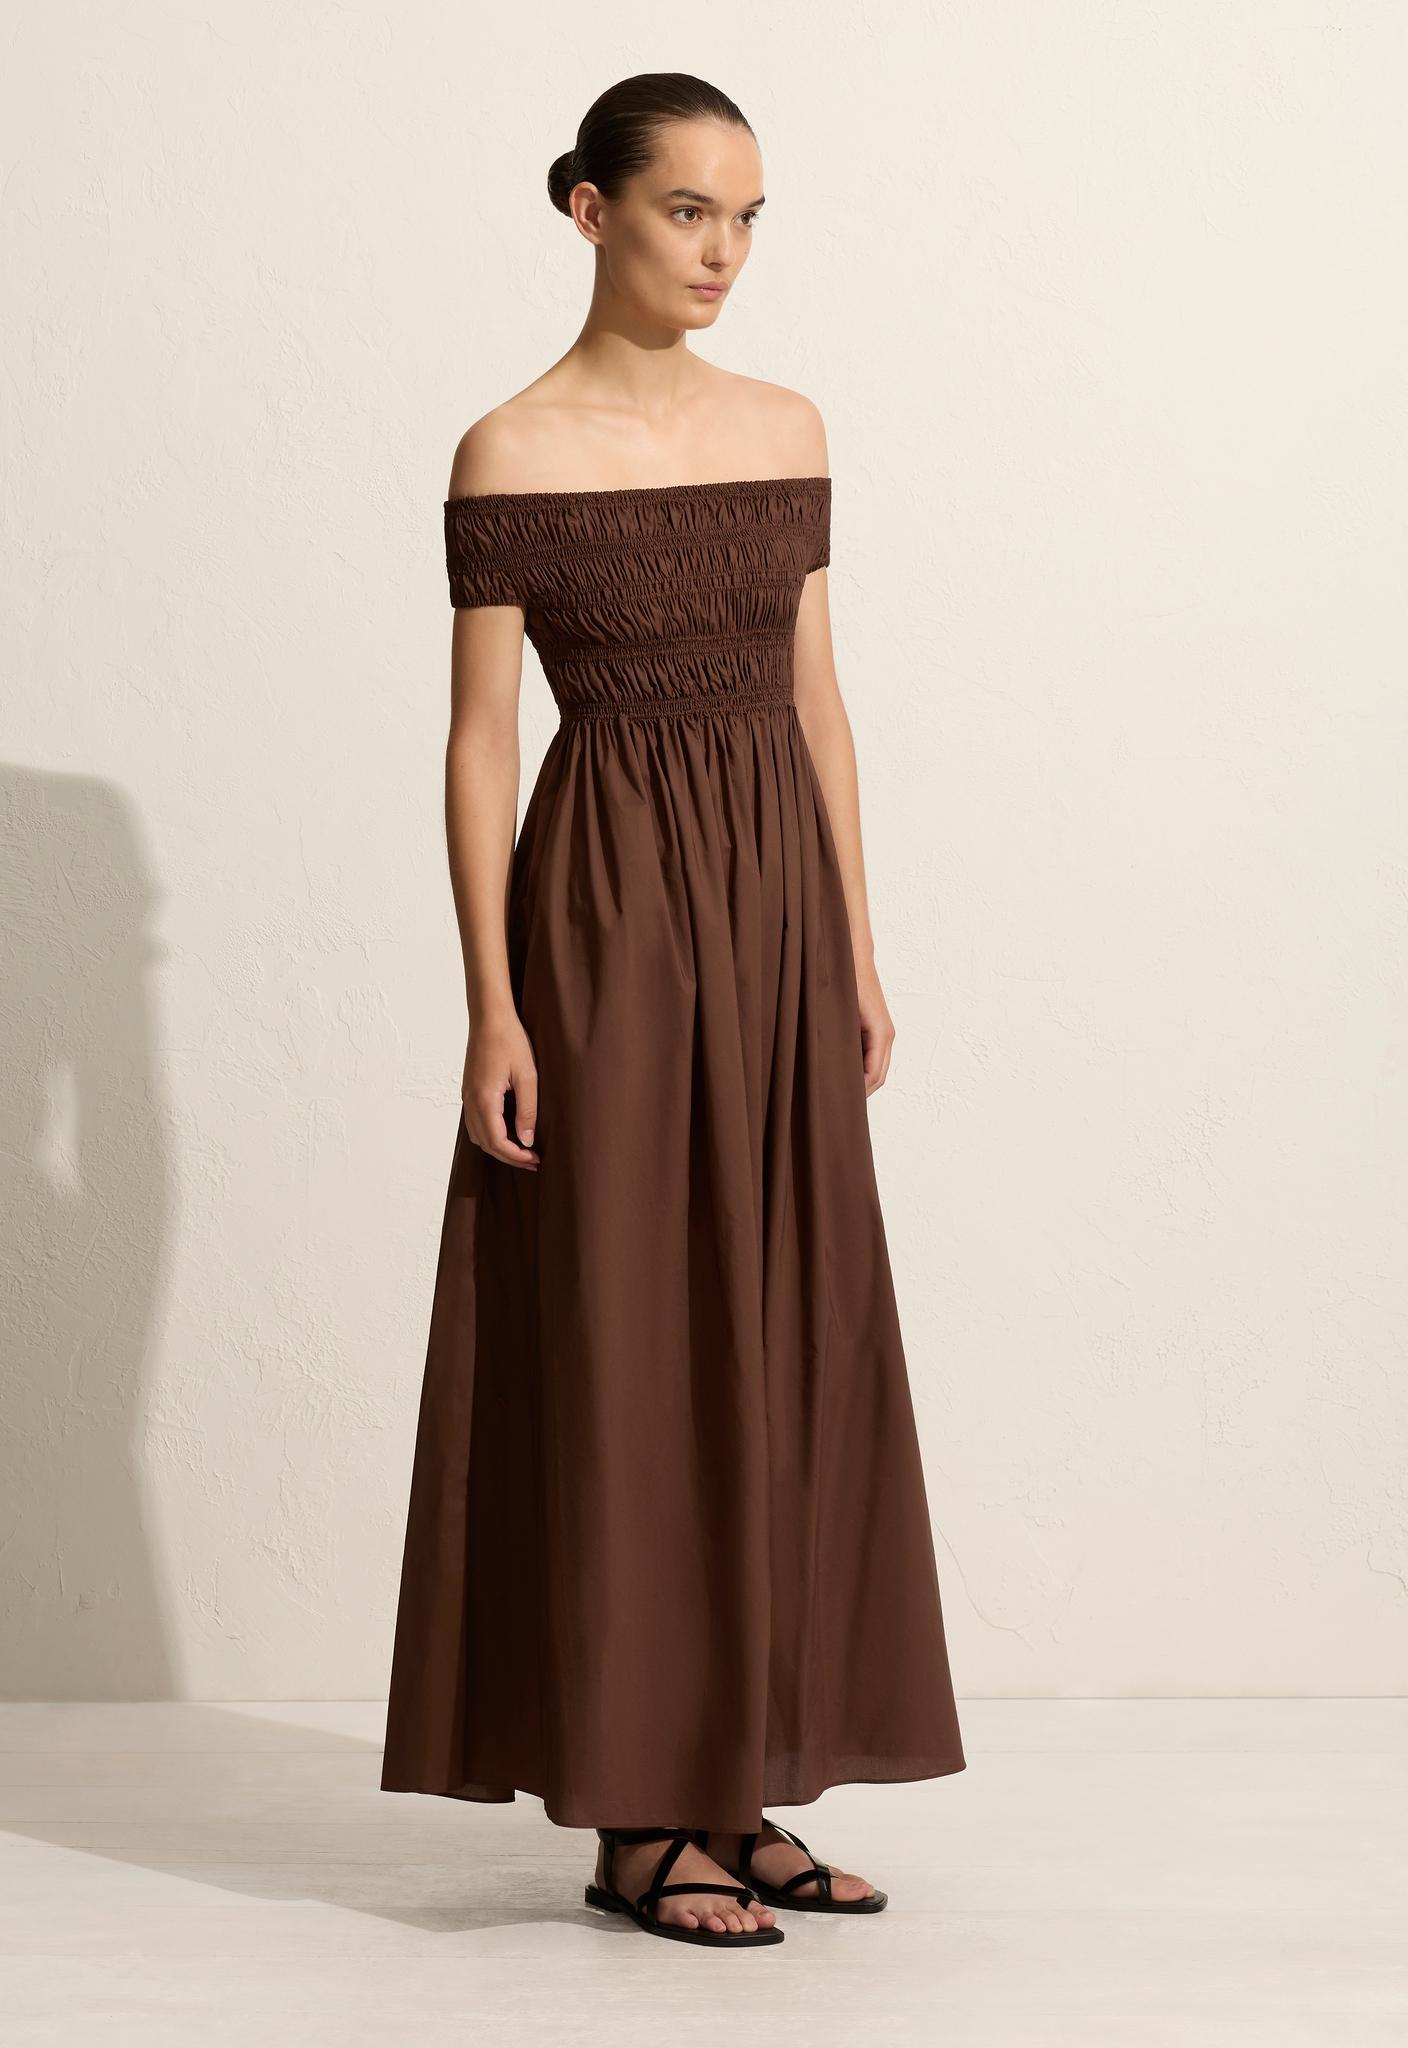 Shirred Off The Shoulder Dress - Sable - Matteau